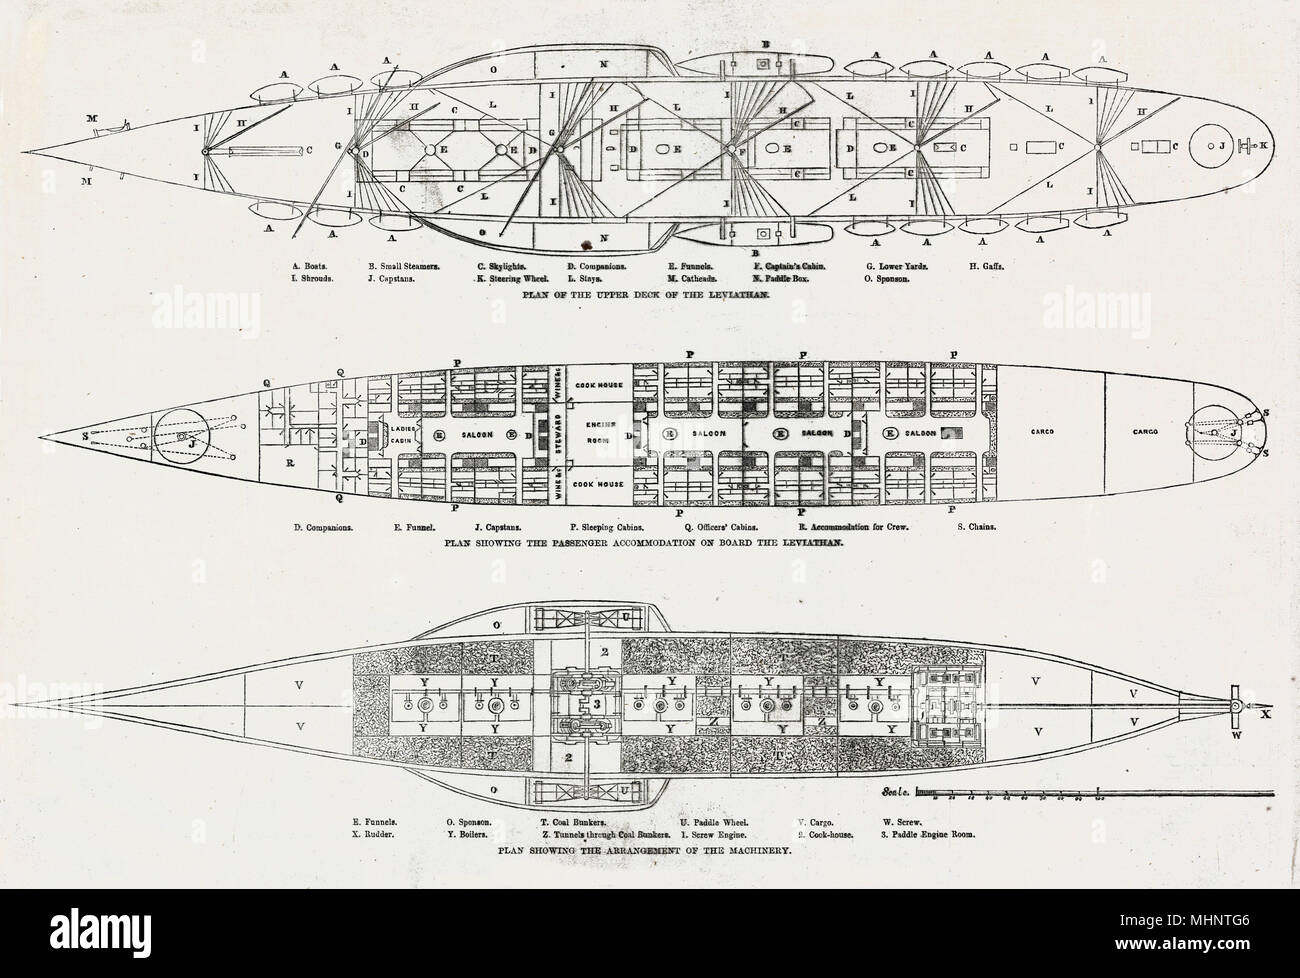 Pläne der oberen Deck, Fahrgasträume und Maschinen der Brunel Steamship, der Leviathan in den frühen Stadien getauft wurde, danach jeweils bekannt als SS Great Eastern. Datum: 1850 Stockfoto